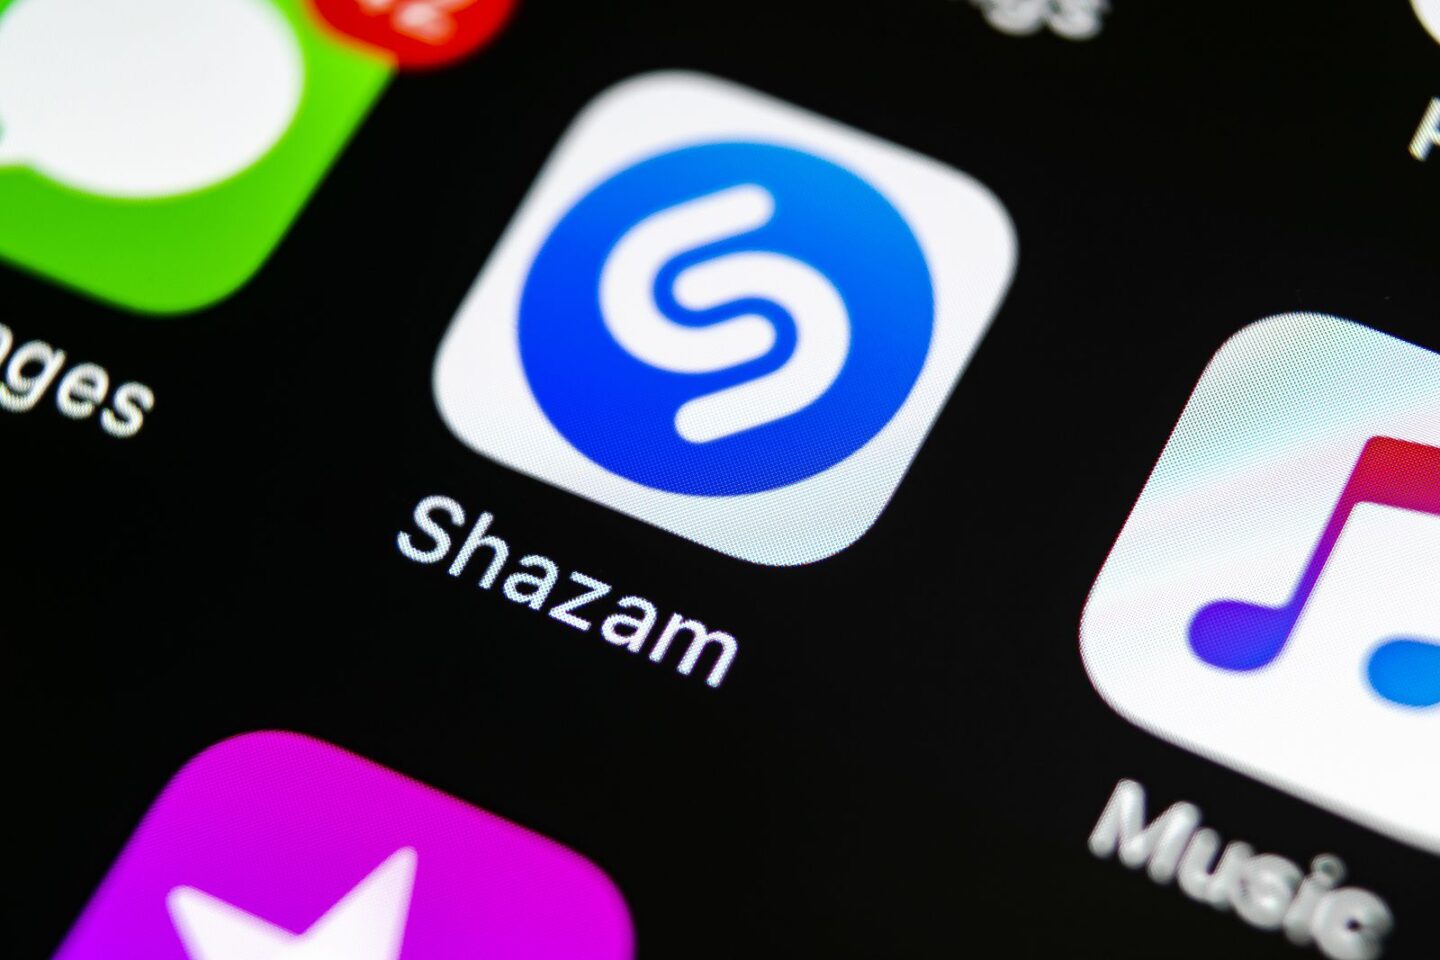 Shazam ya puede identificar temas de TikTok, Instagram y YouTube